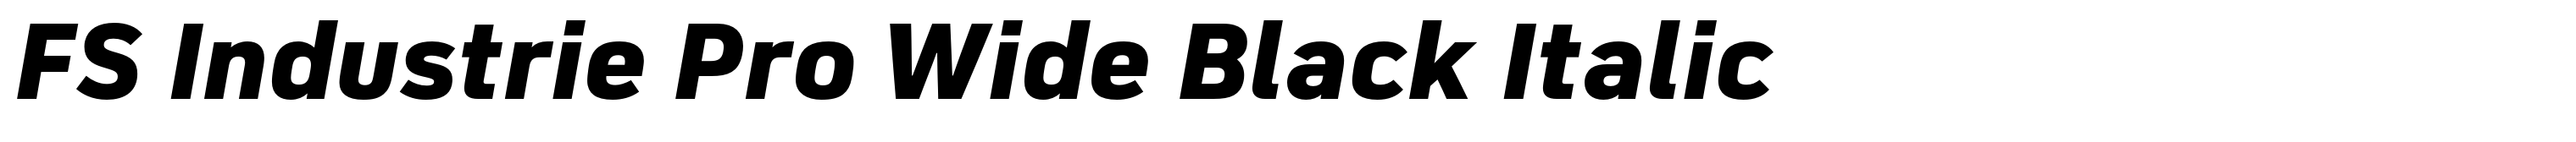 FS Industrie Pro Wide Black Italic